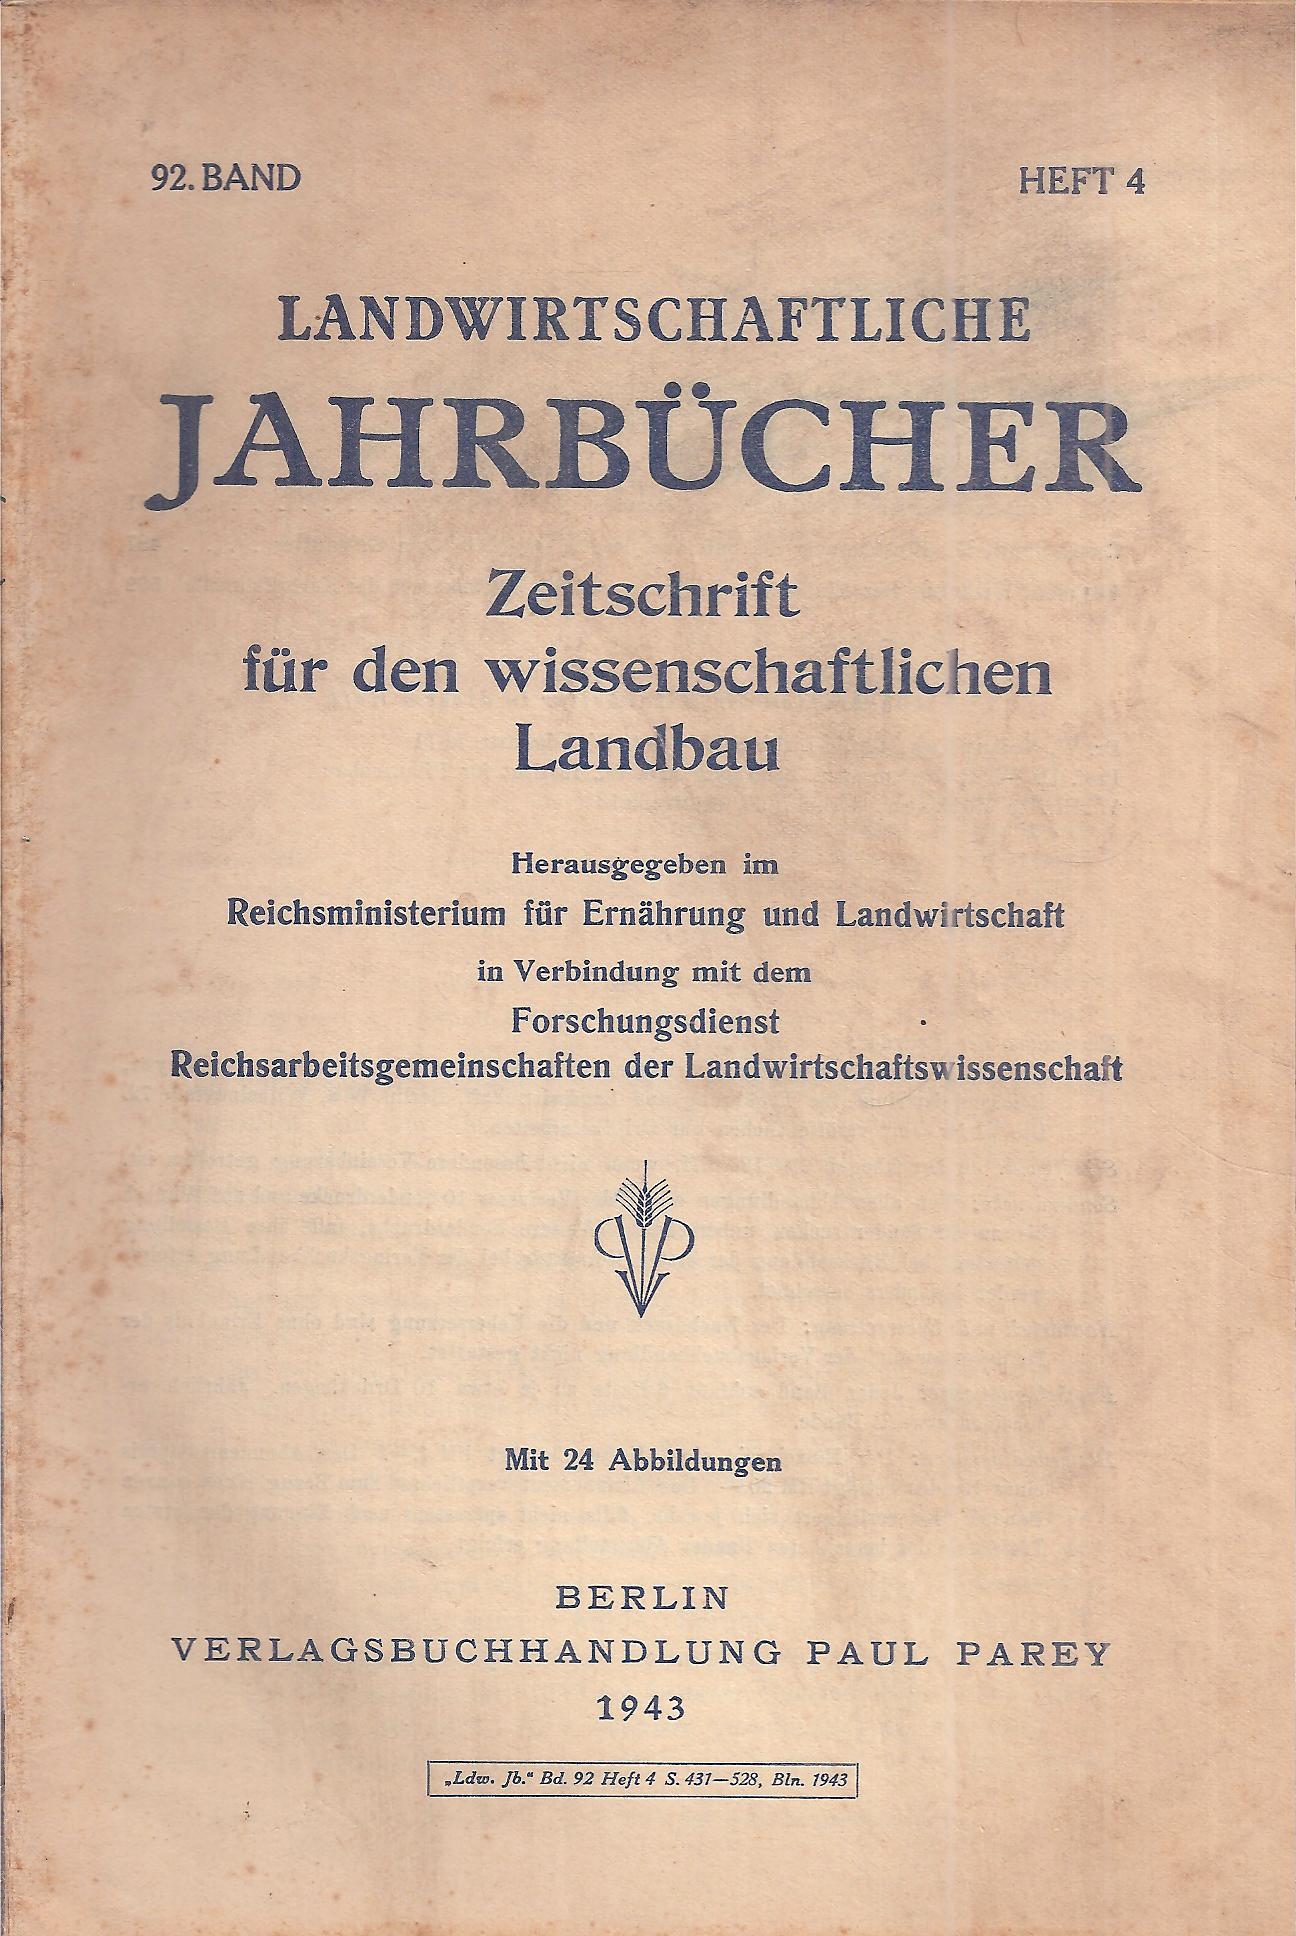 Reichsministerium für Ernährung und Landwirtschaft  Landwirtschftliche Jahrbücher 92.Band 1943 Heft 4 (1 Heft) 